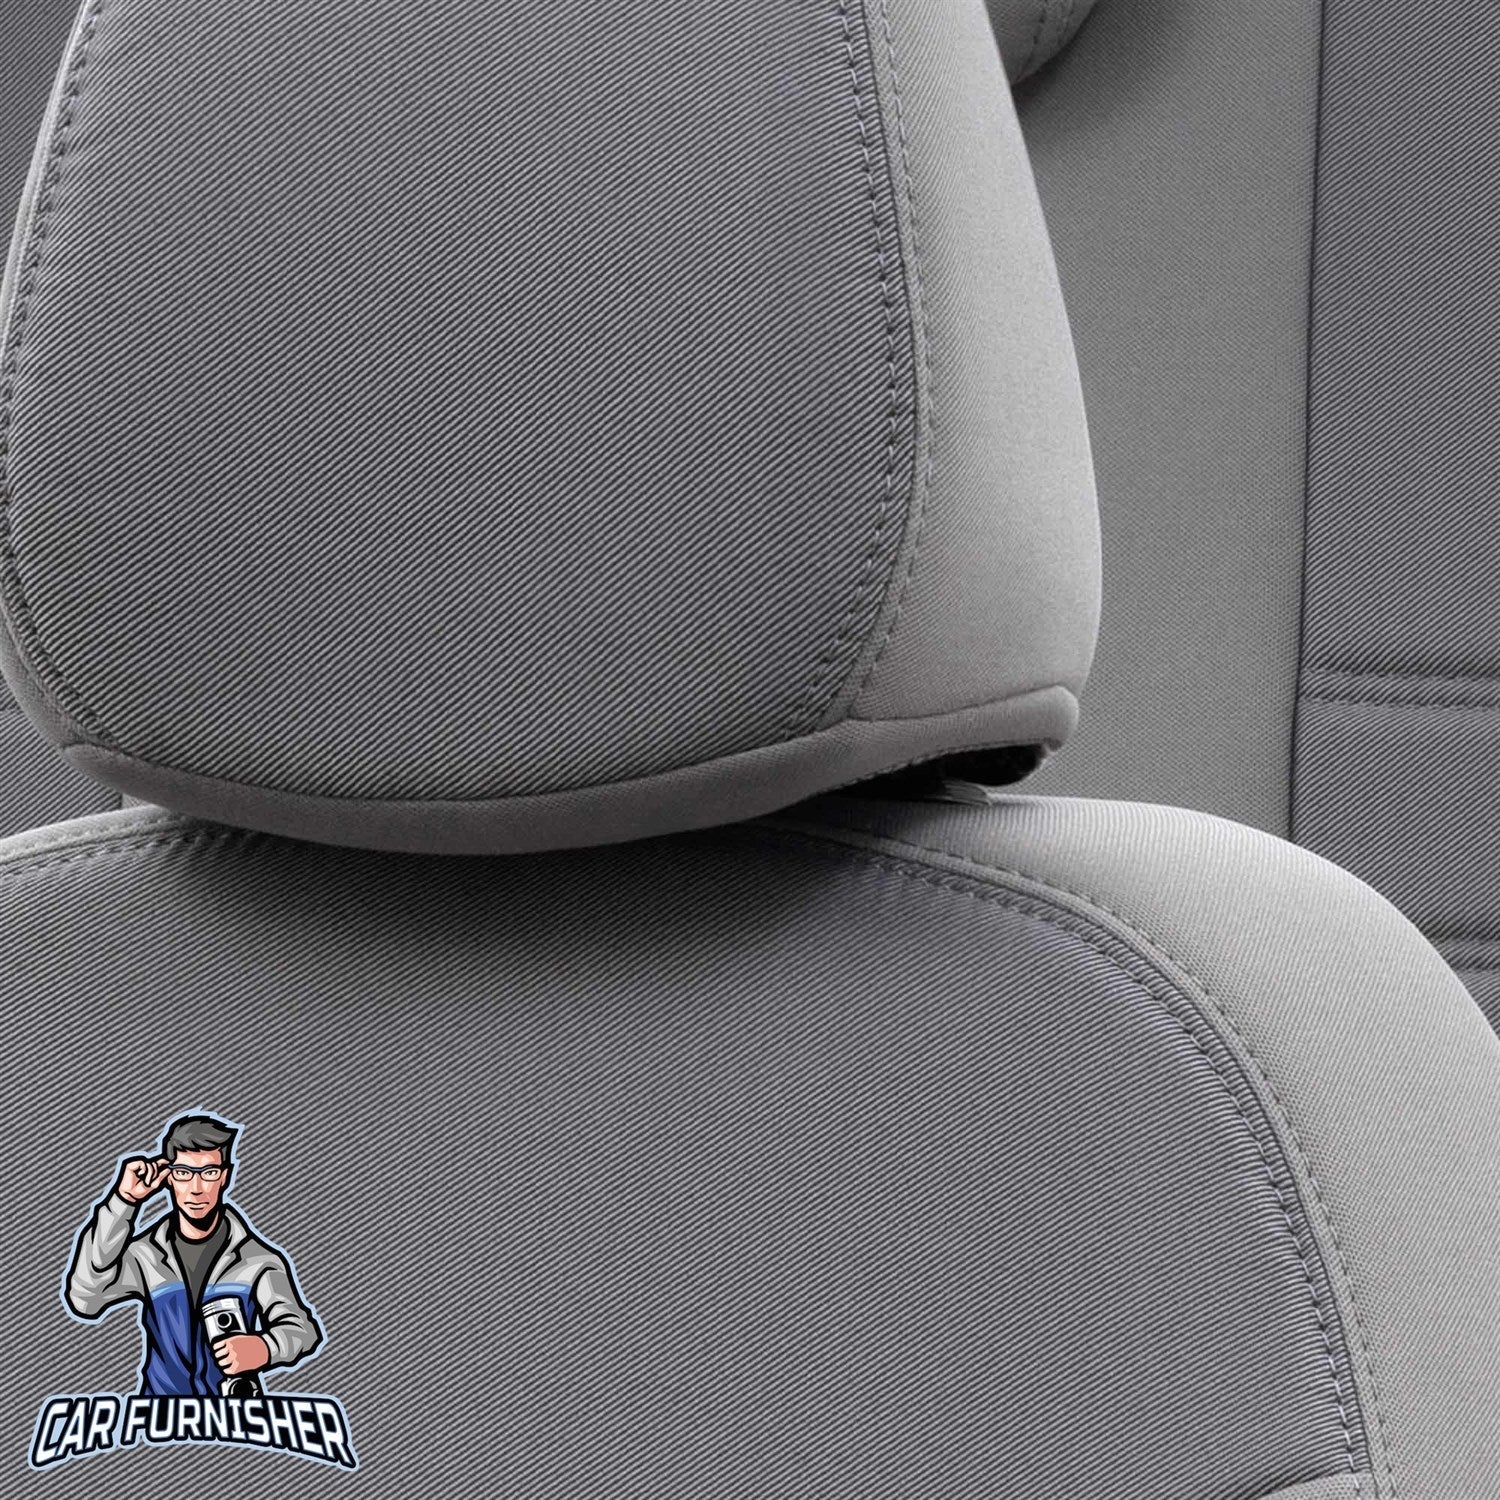 Bmw 1 Series Seat Cover Original Jacquard Design Gray Jacquard Fabric